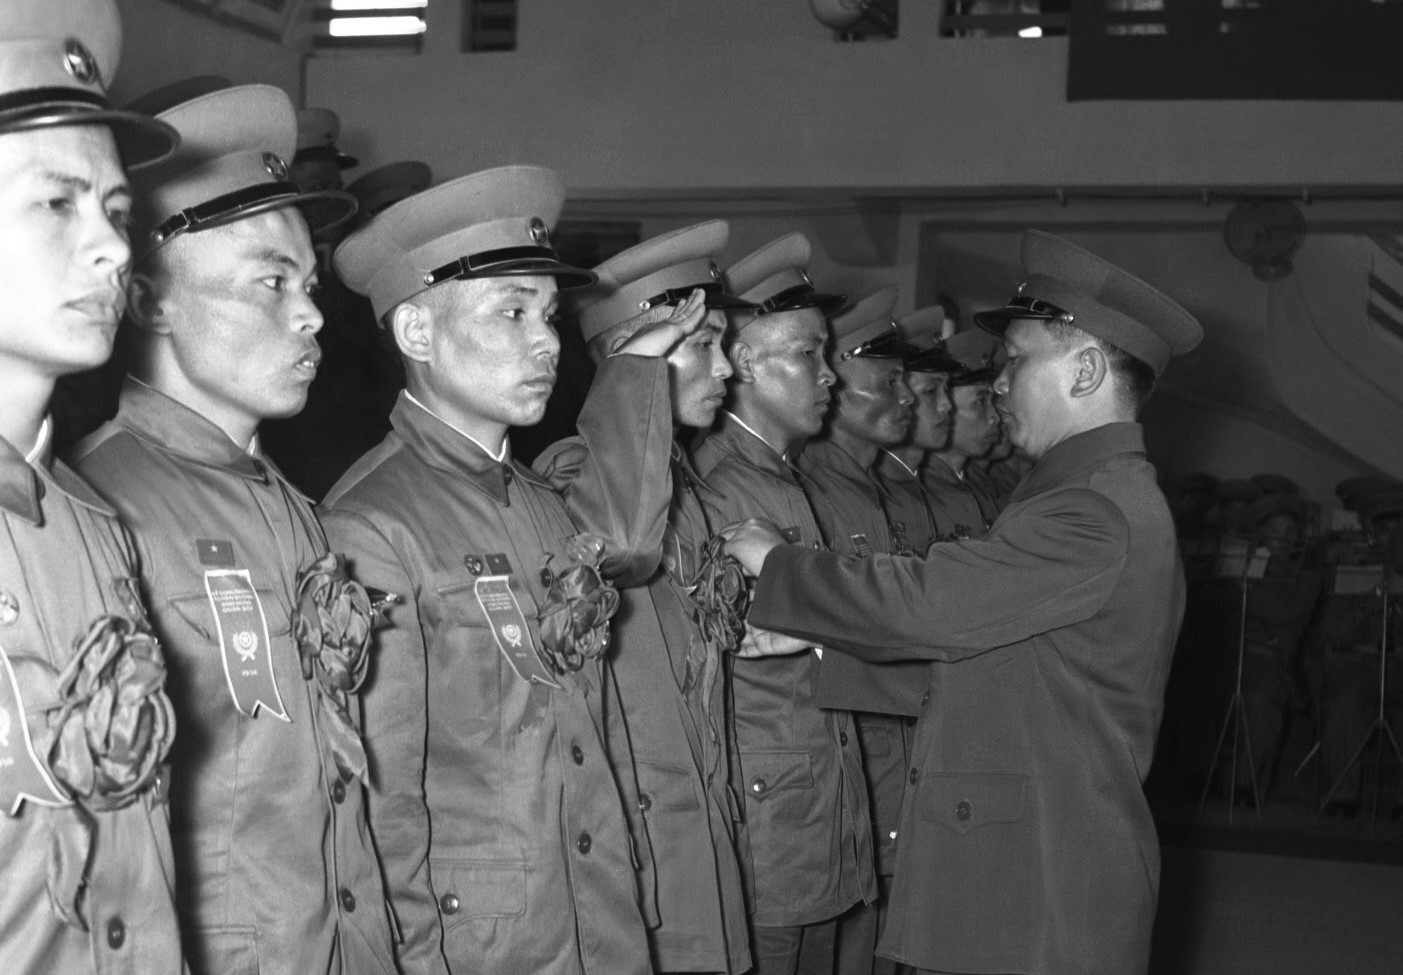 Đại tướng Võ Nguyên Giáp trao Huân chương cho các Anh hùng, tại Lễ tuyên dương Anh hùng quân đội lần thứ 3 ở Hà Nội, ngày 7/5/1956, nhân dịp kỷ niệm Ngày chiến thắng Điện Biên Phủ. (Ảnh: TTXVN)